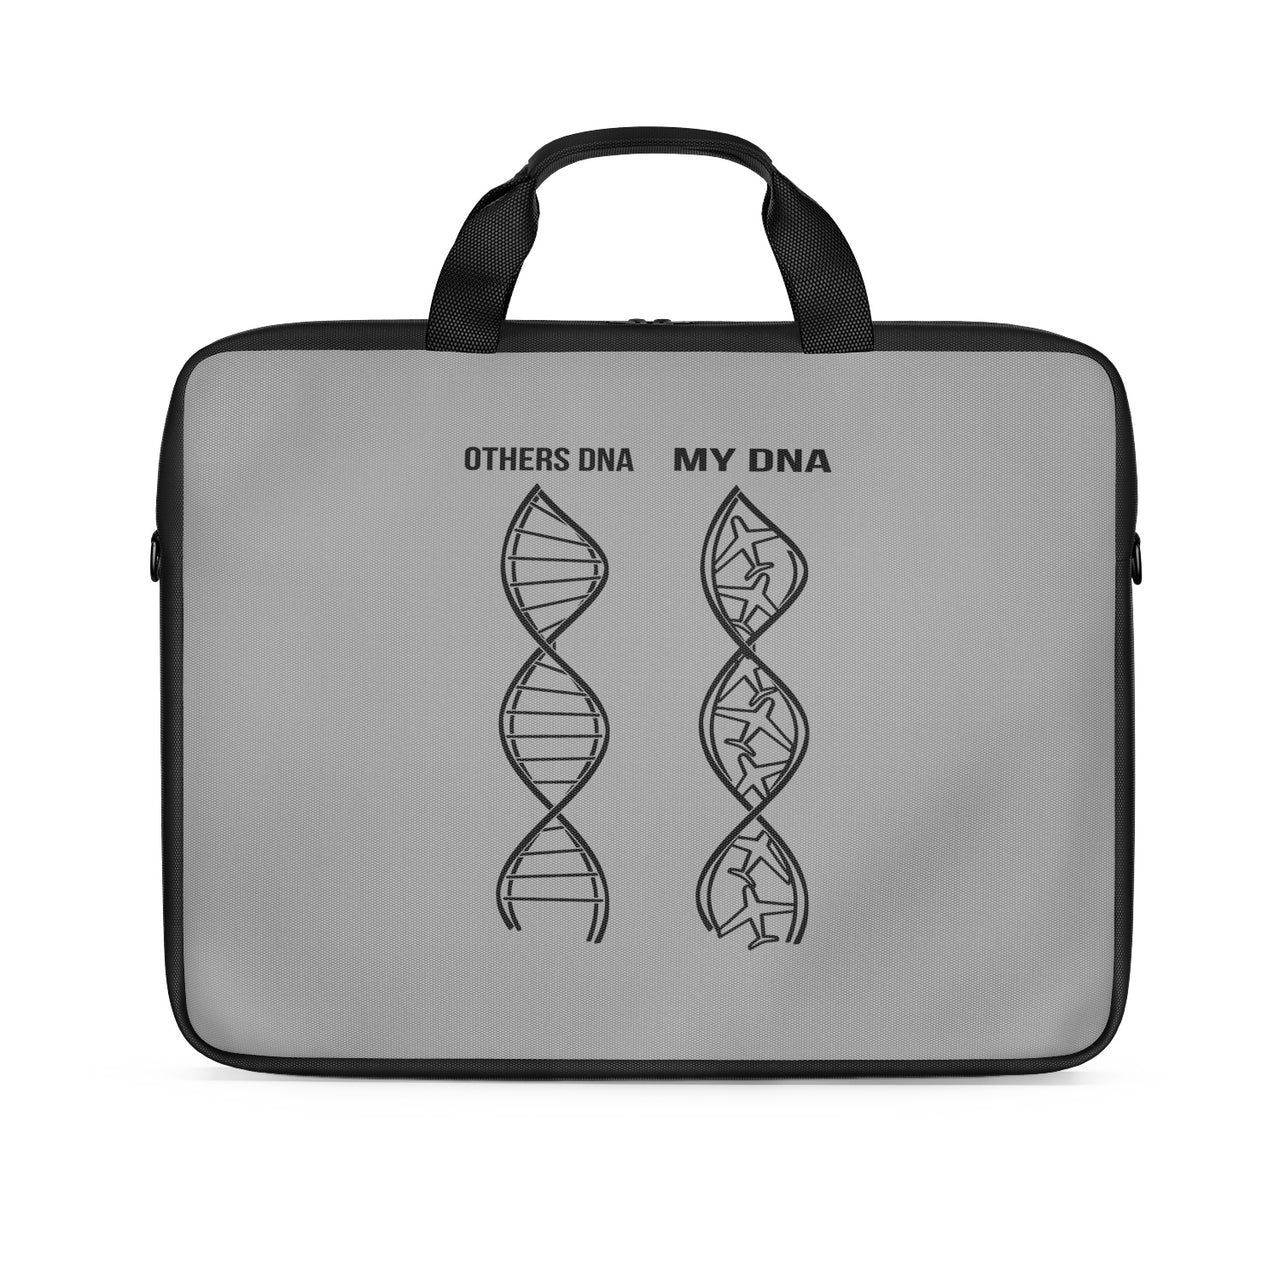 Aviation DNA Designed Laptop & Tablet Bags